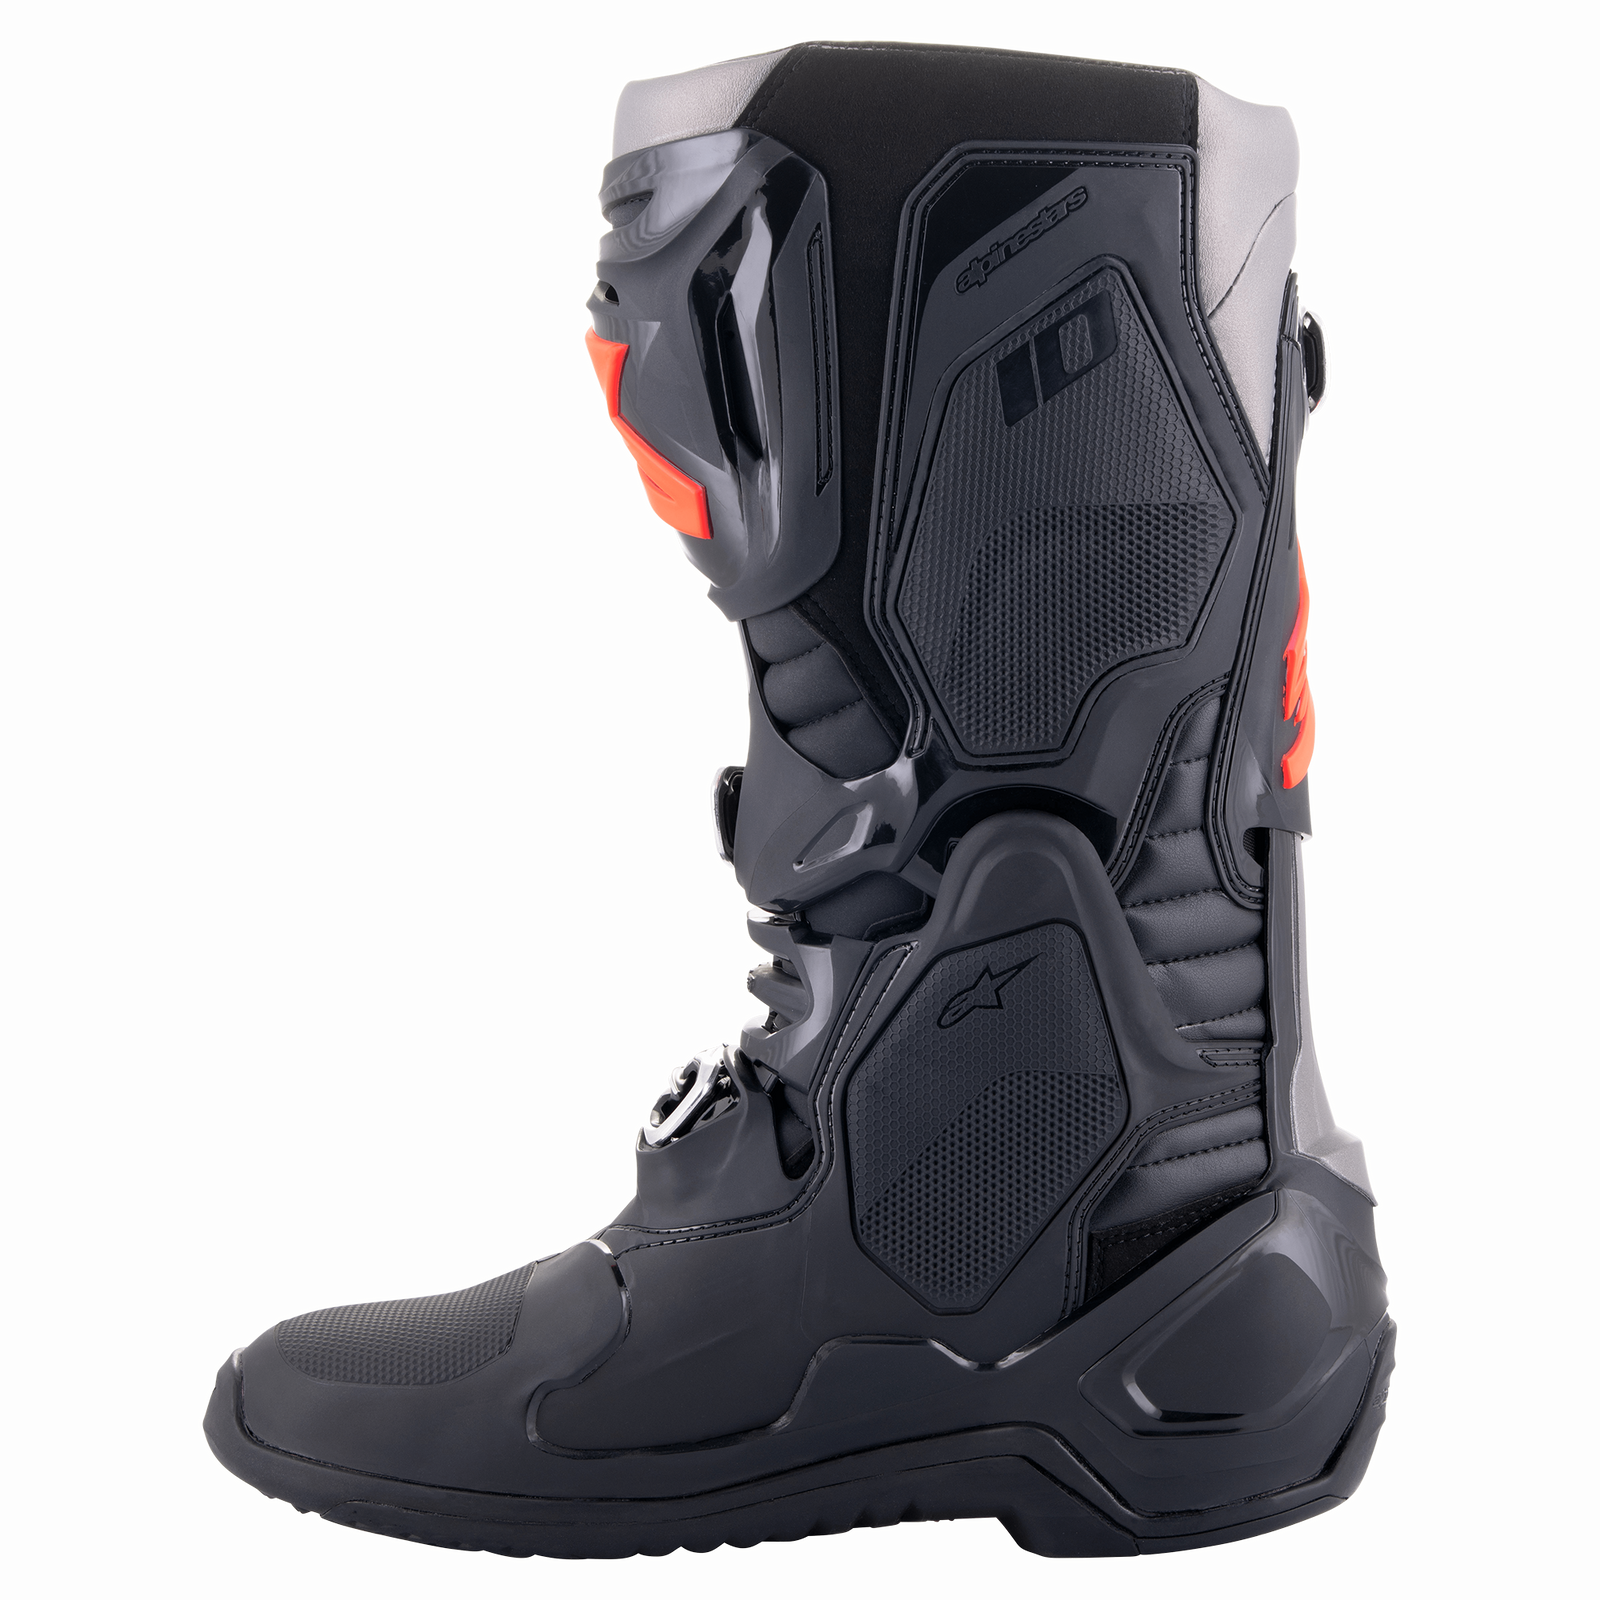 Tech 10 Boots